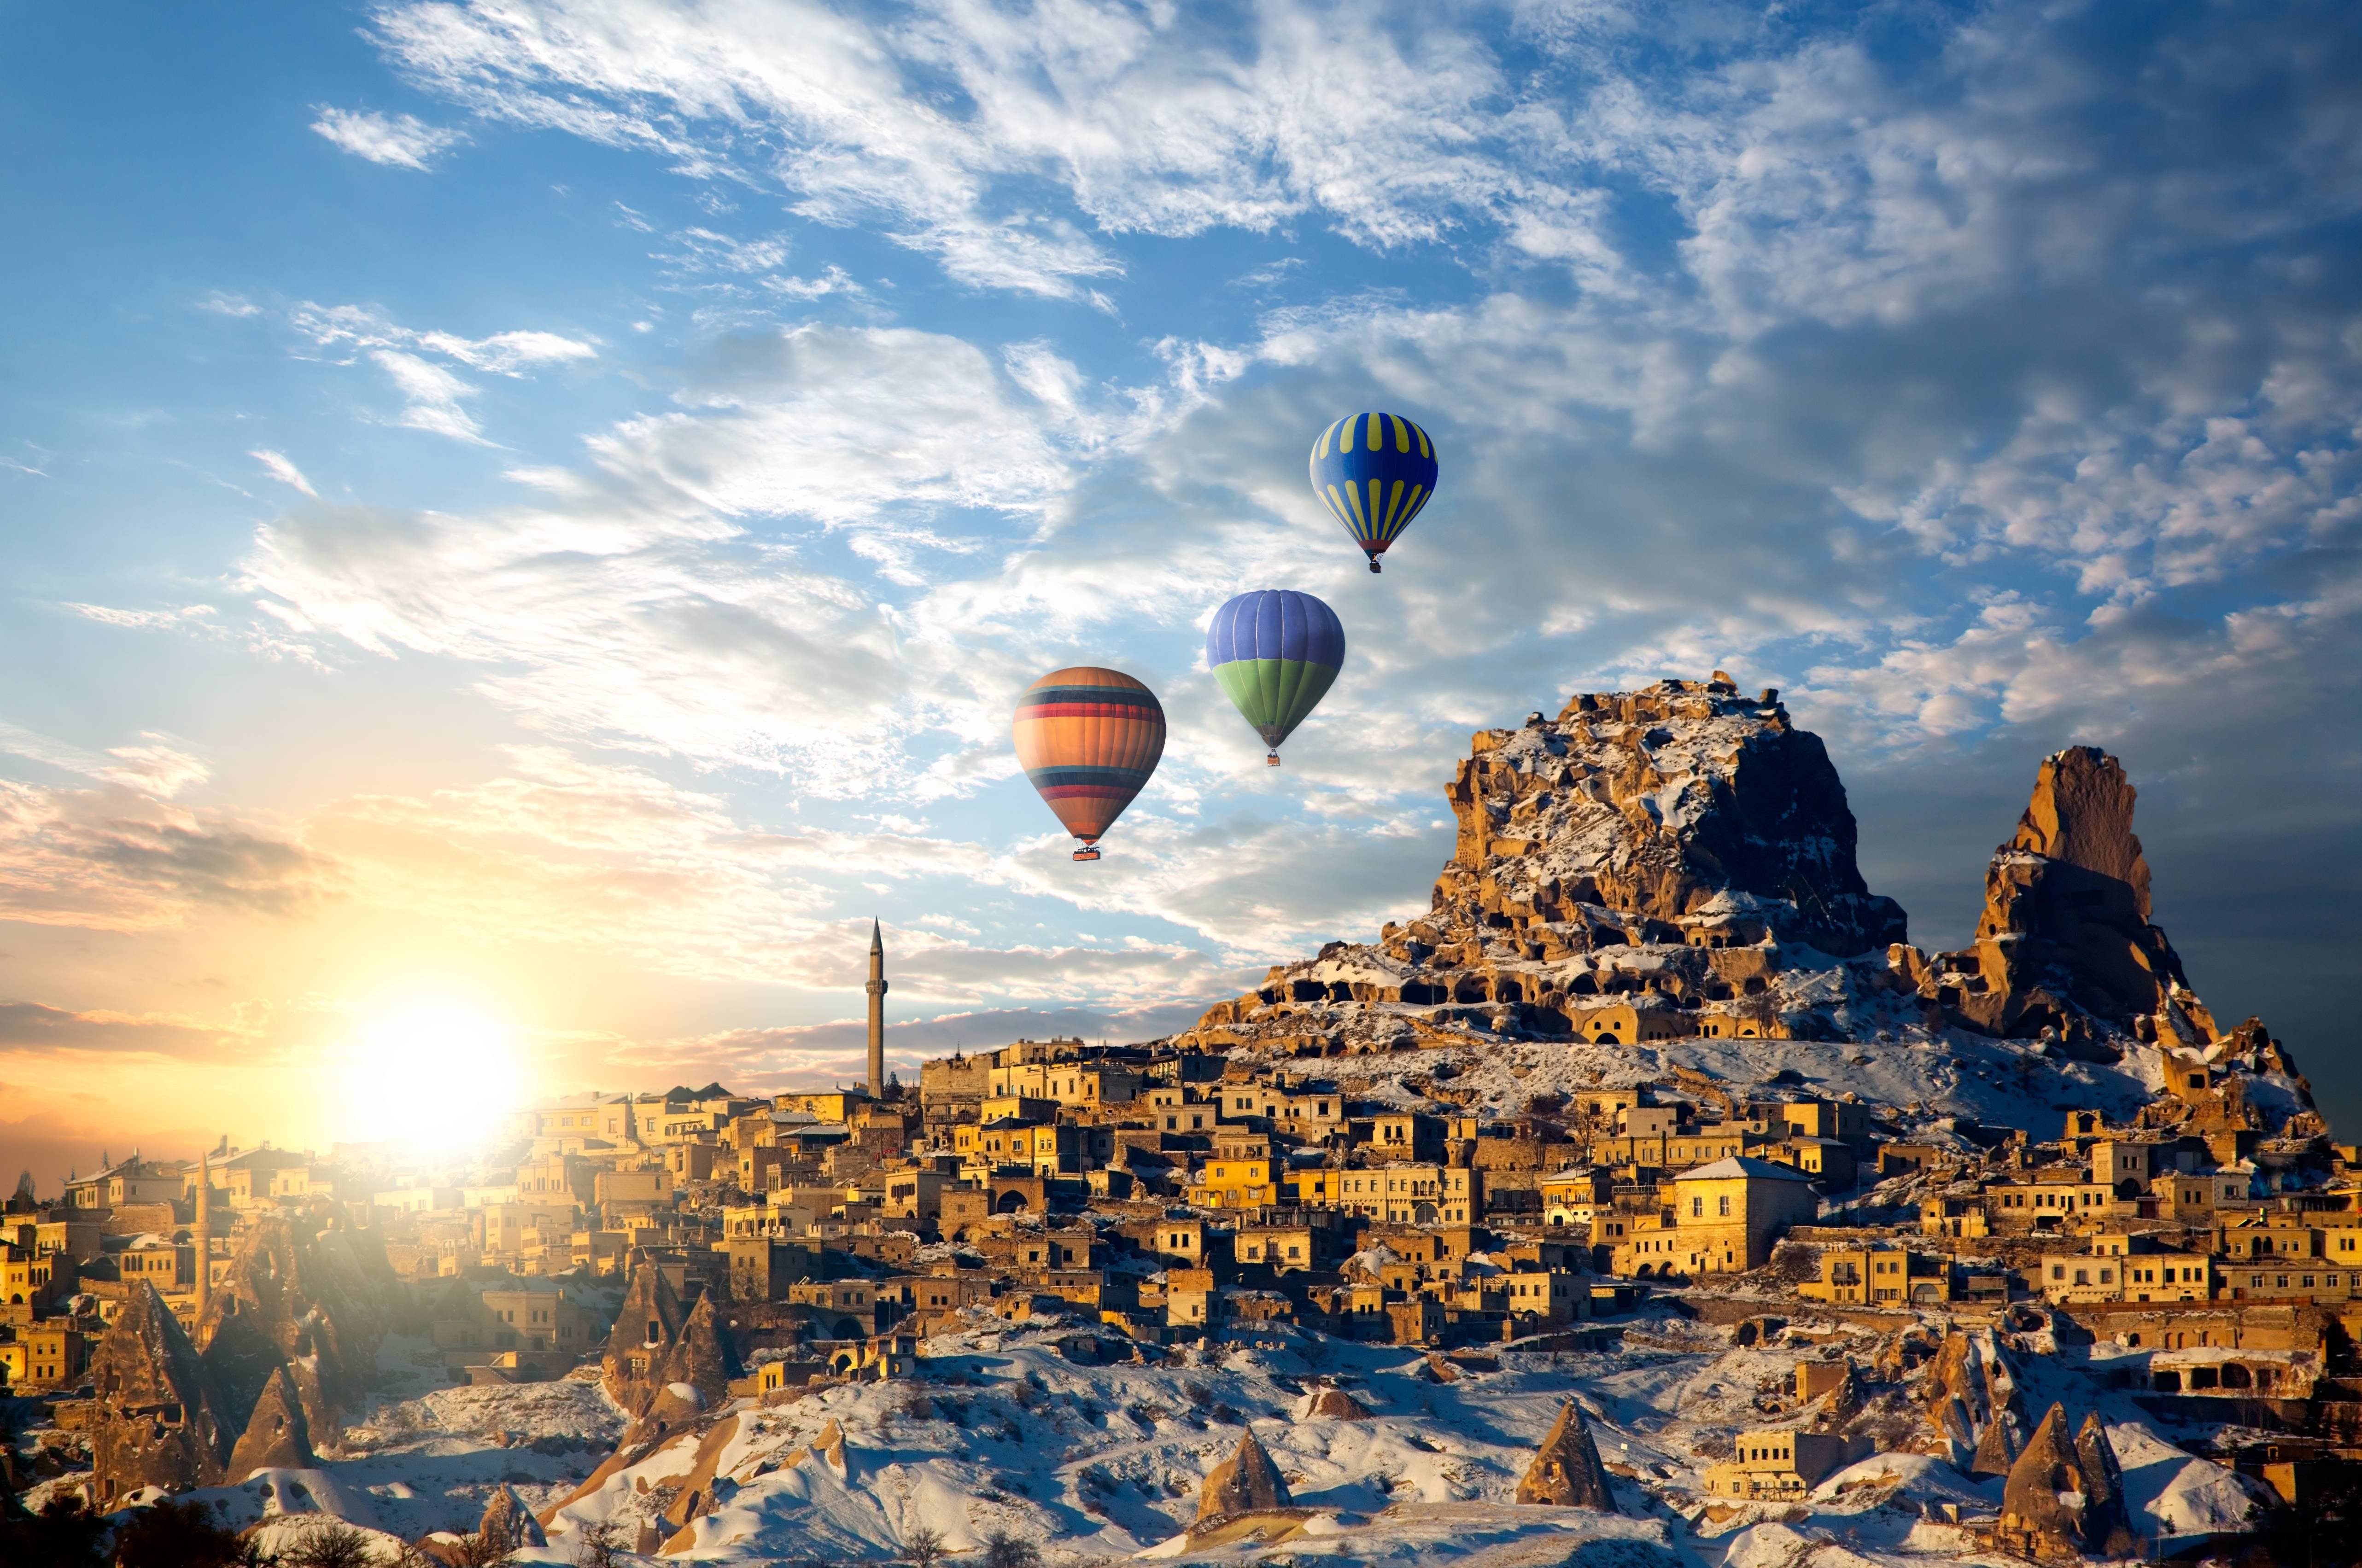 Turkey Hot Air Balloon , HD Wallpaper & Backgrounds